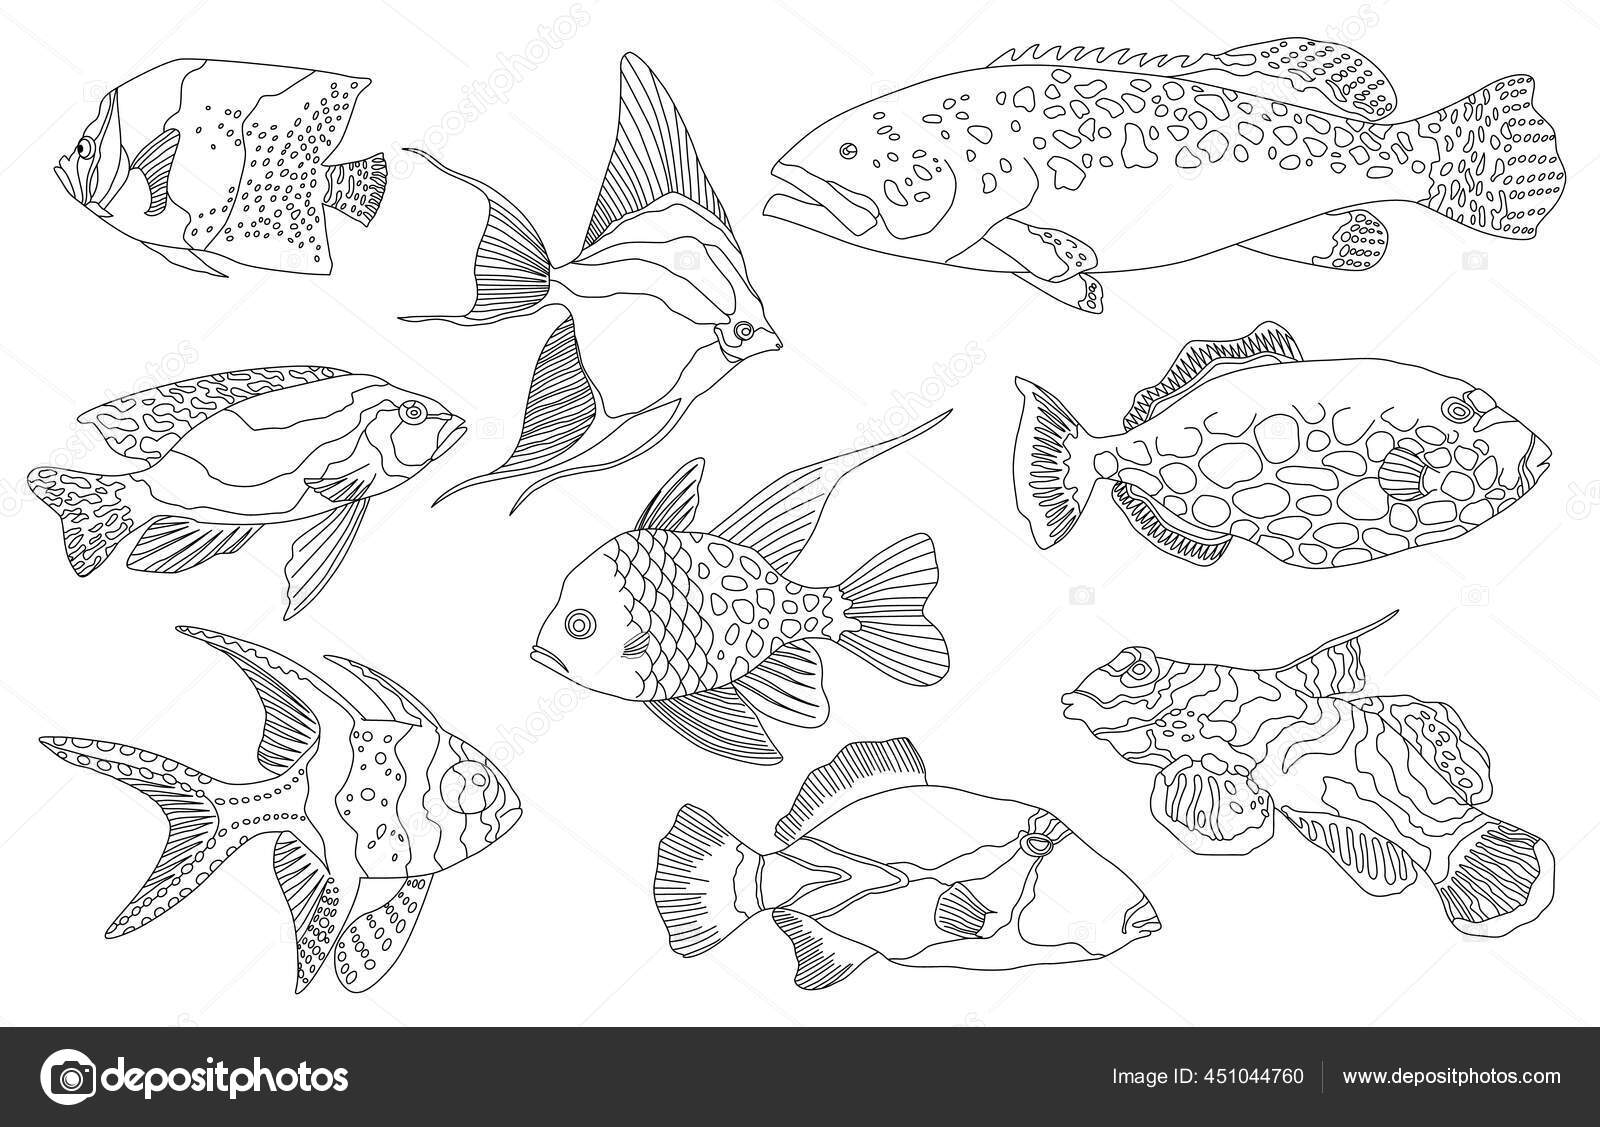 Lautan Tropis Dan Akuarium Koleksi Ikan Pada Latar Belakang Putih Set Air Tawar Dan Air Tawar Aquarium Ikan Kartun Varietas Ornamen Ikan Populer Dalam Gaya Menggambar Garis Sketsa Stok Vektor